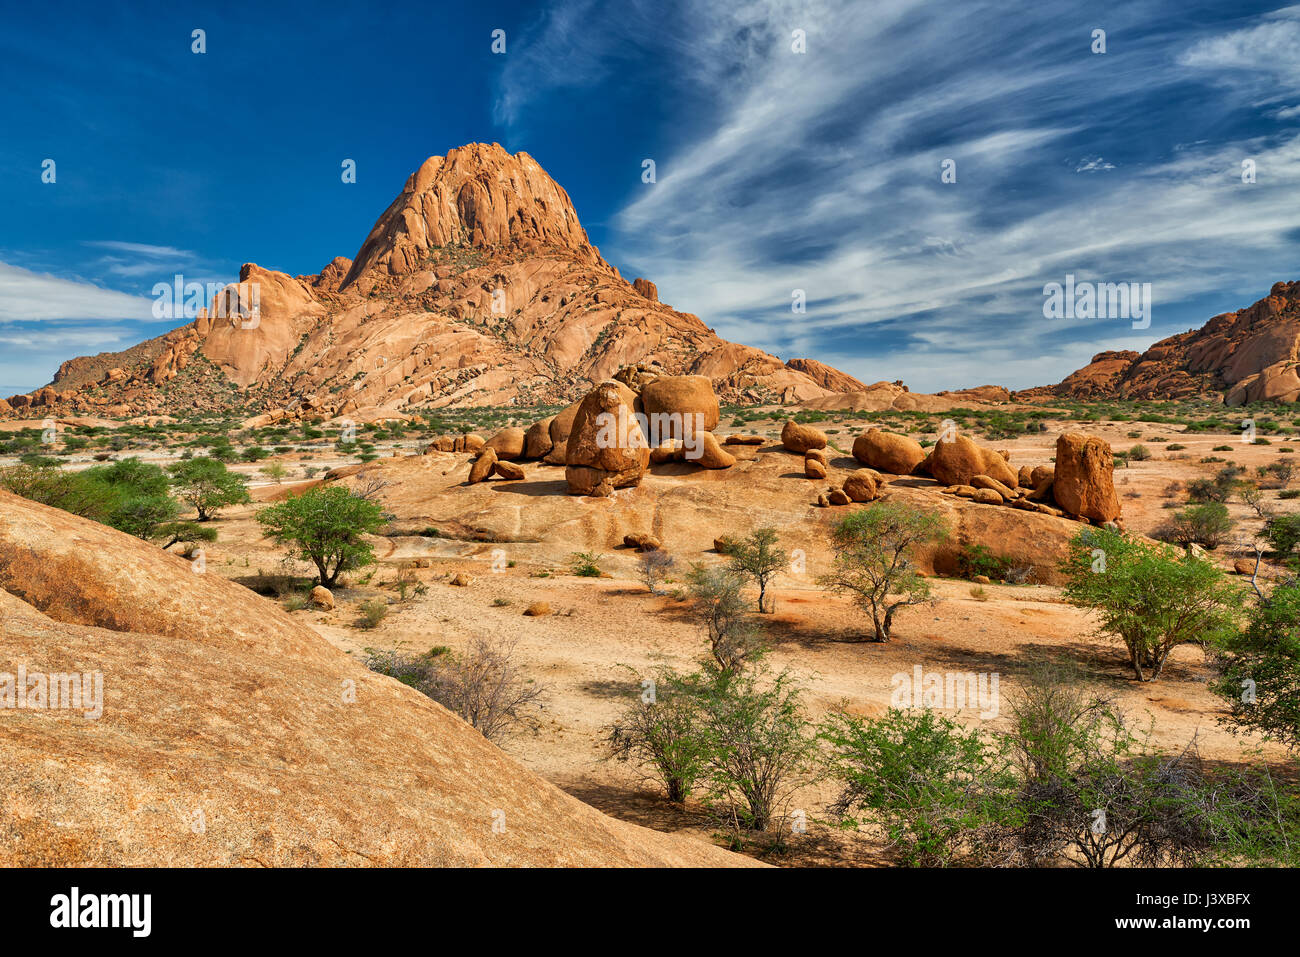 Spitzkoppe, mountain landscape of granite rocks, Namibia Stock Photo